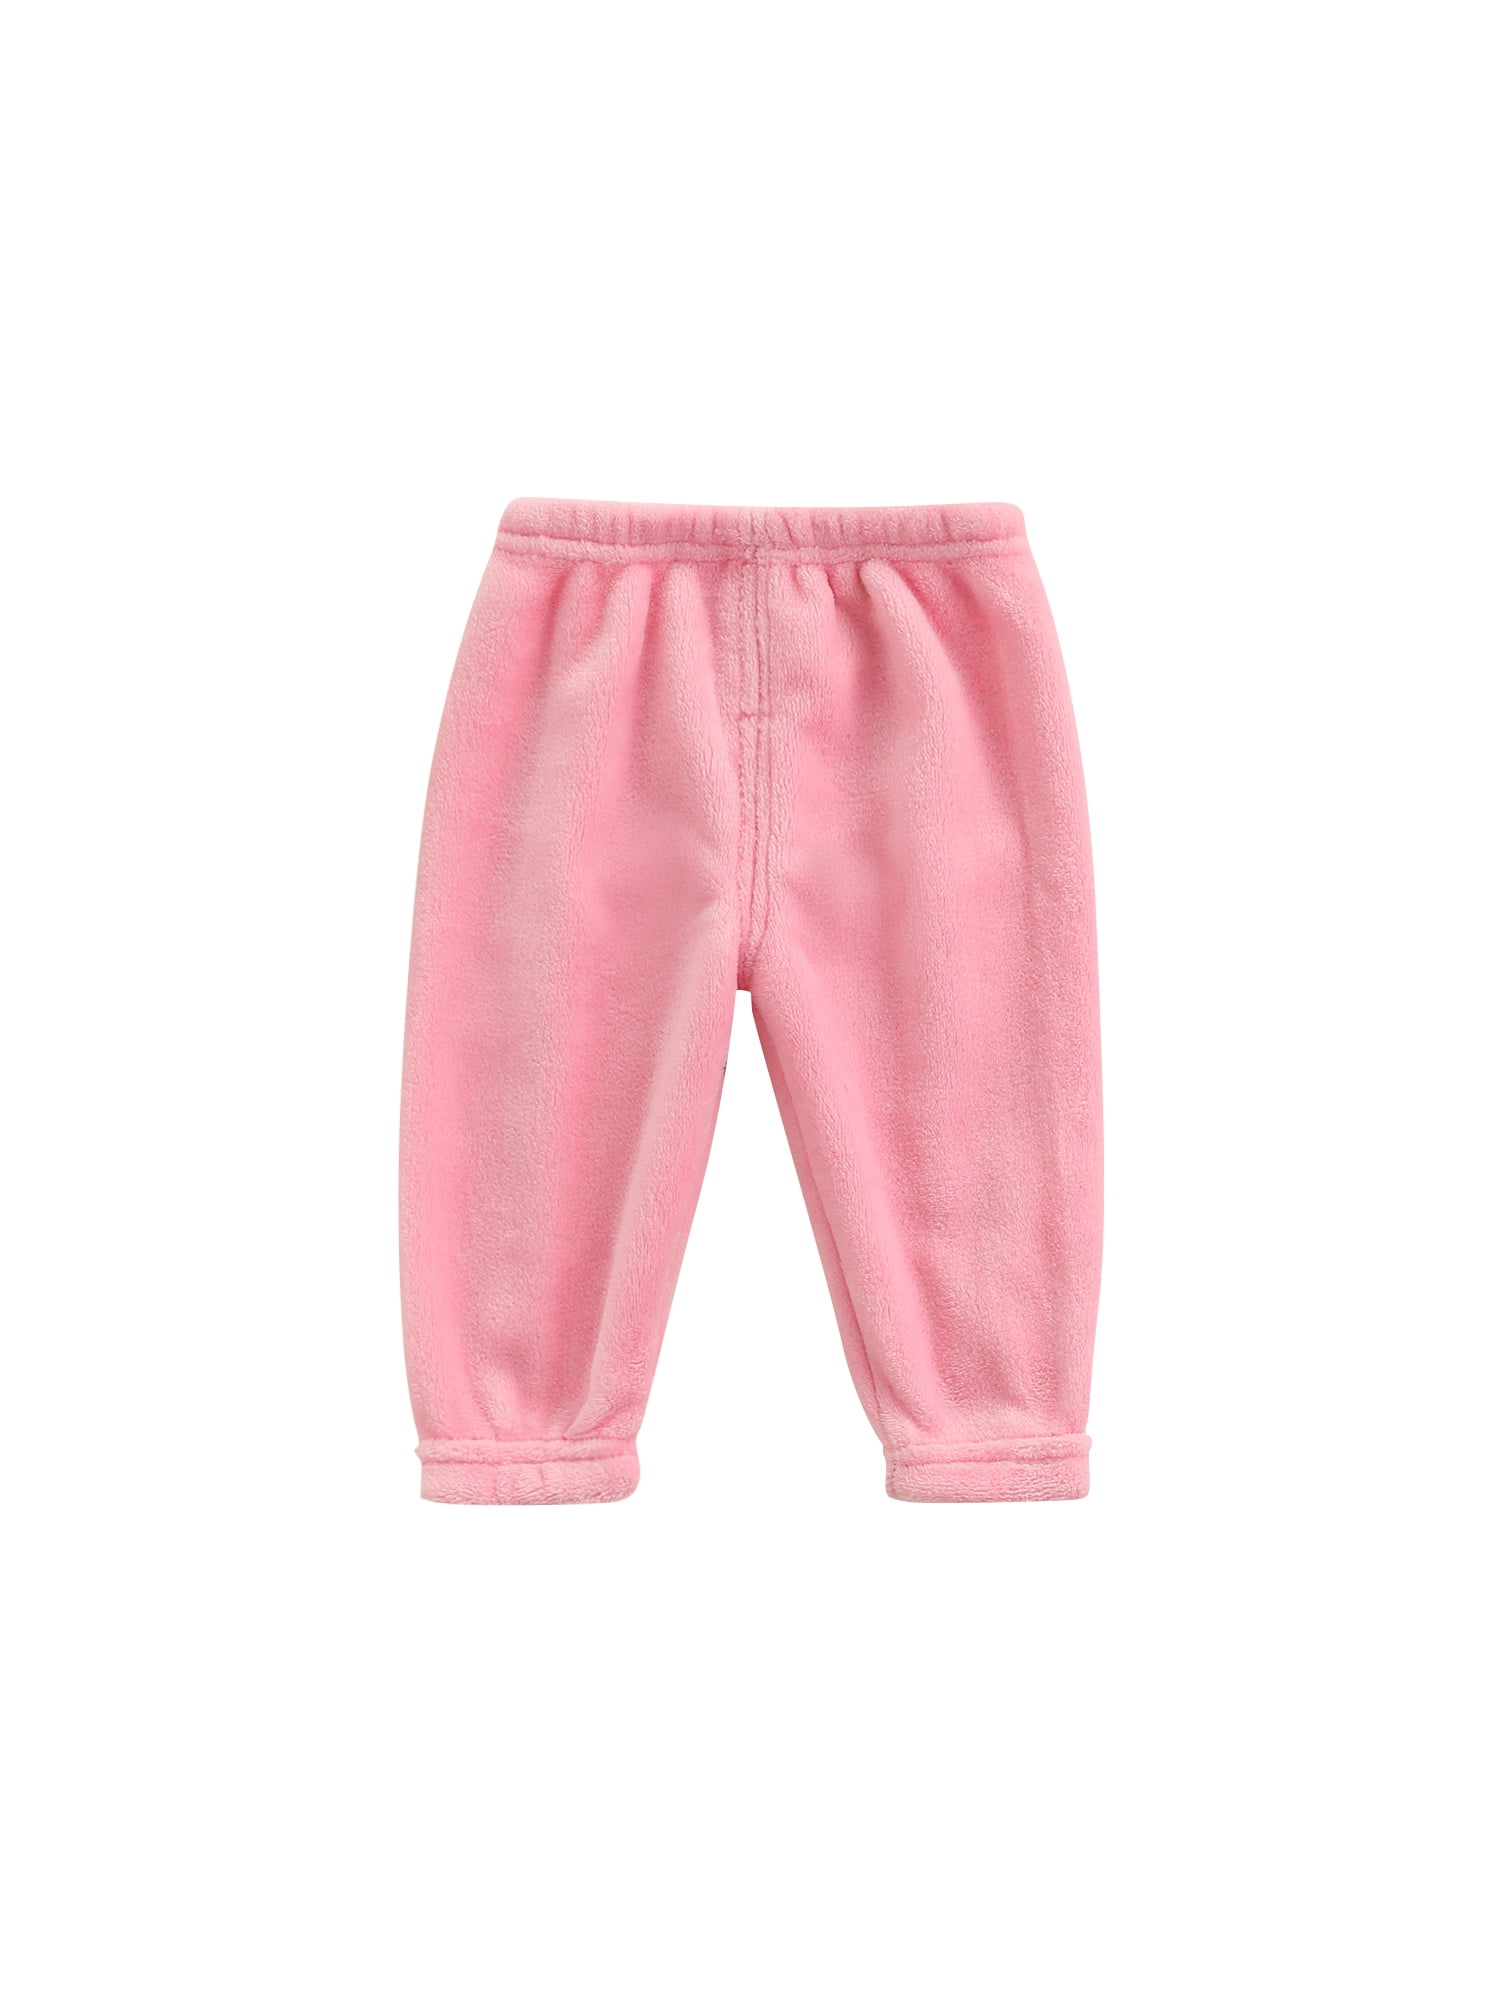 Toddler Winter Plush Pants Velvet Thick Leggings Warm Relaxed Fall Winter Trousers for Unisex Kids